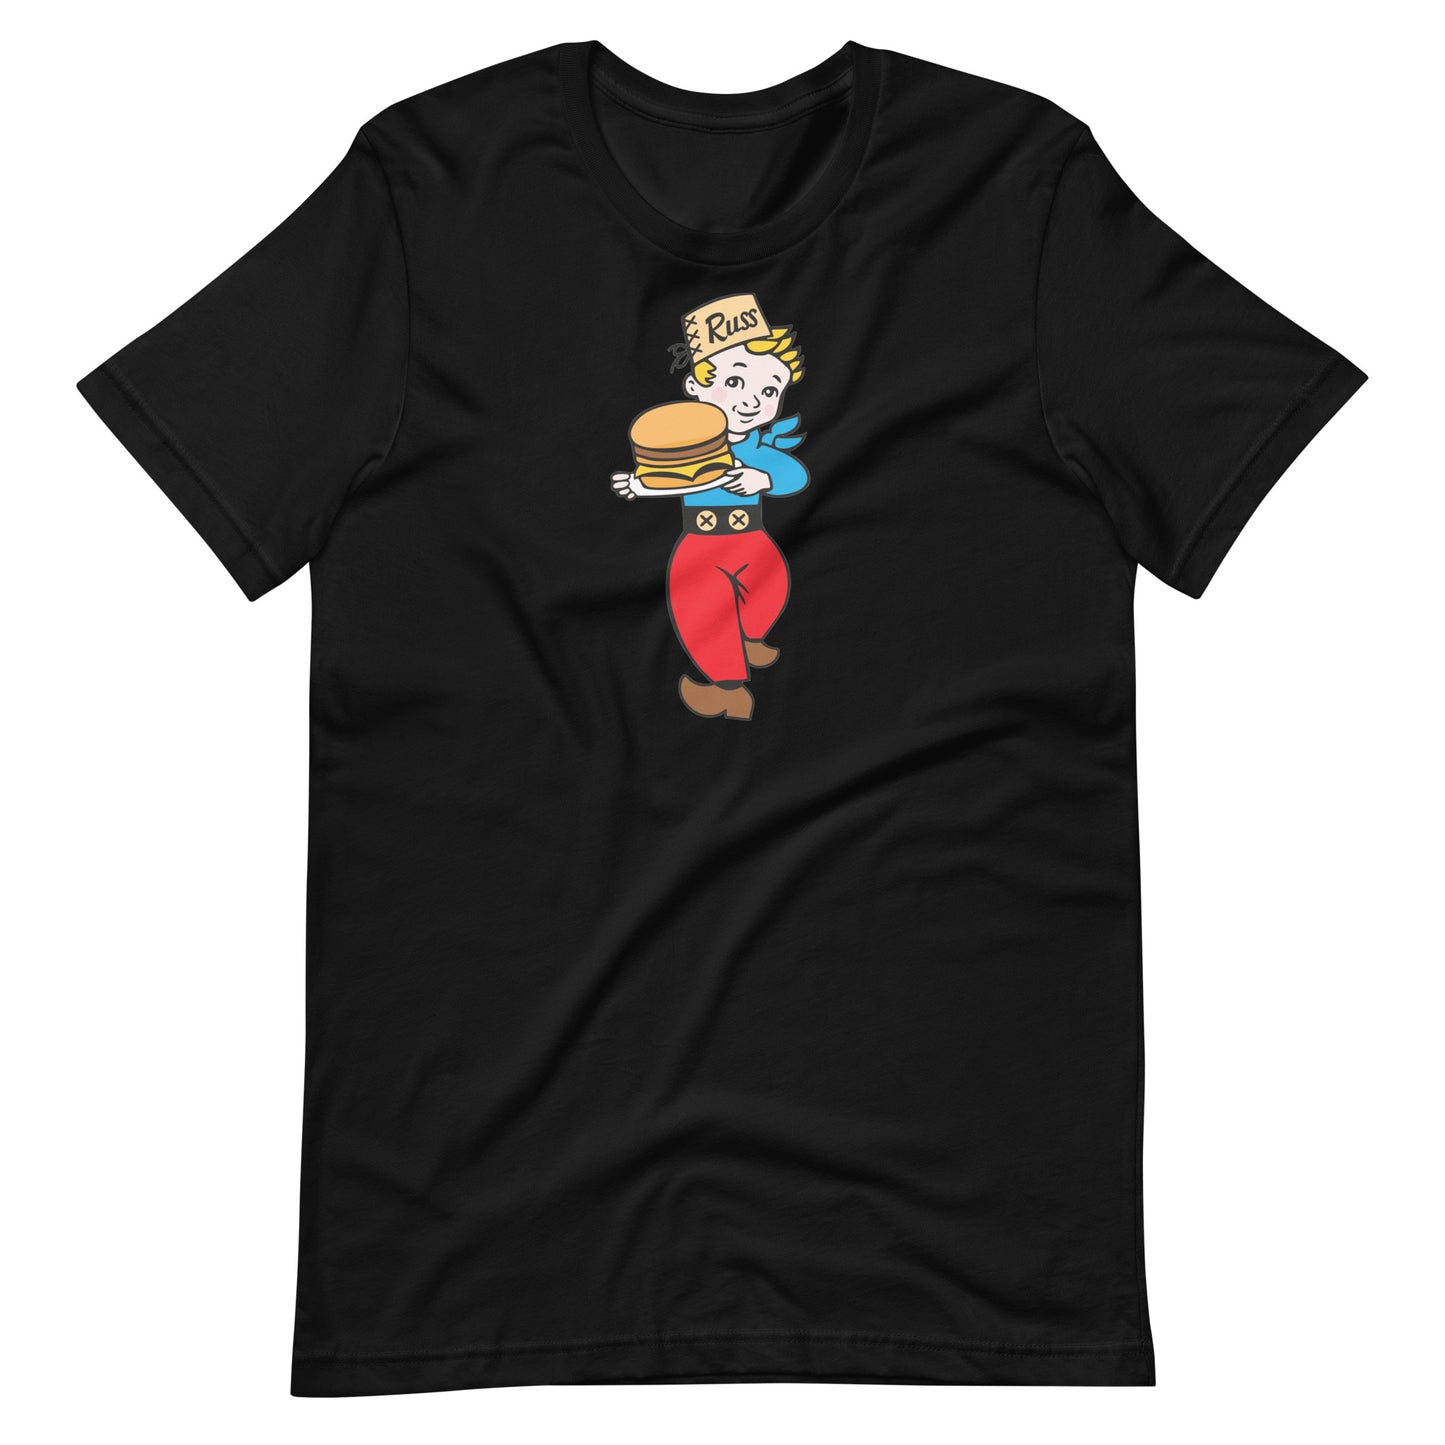 Russ Boy T-shirt